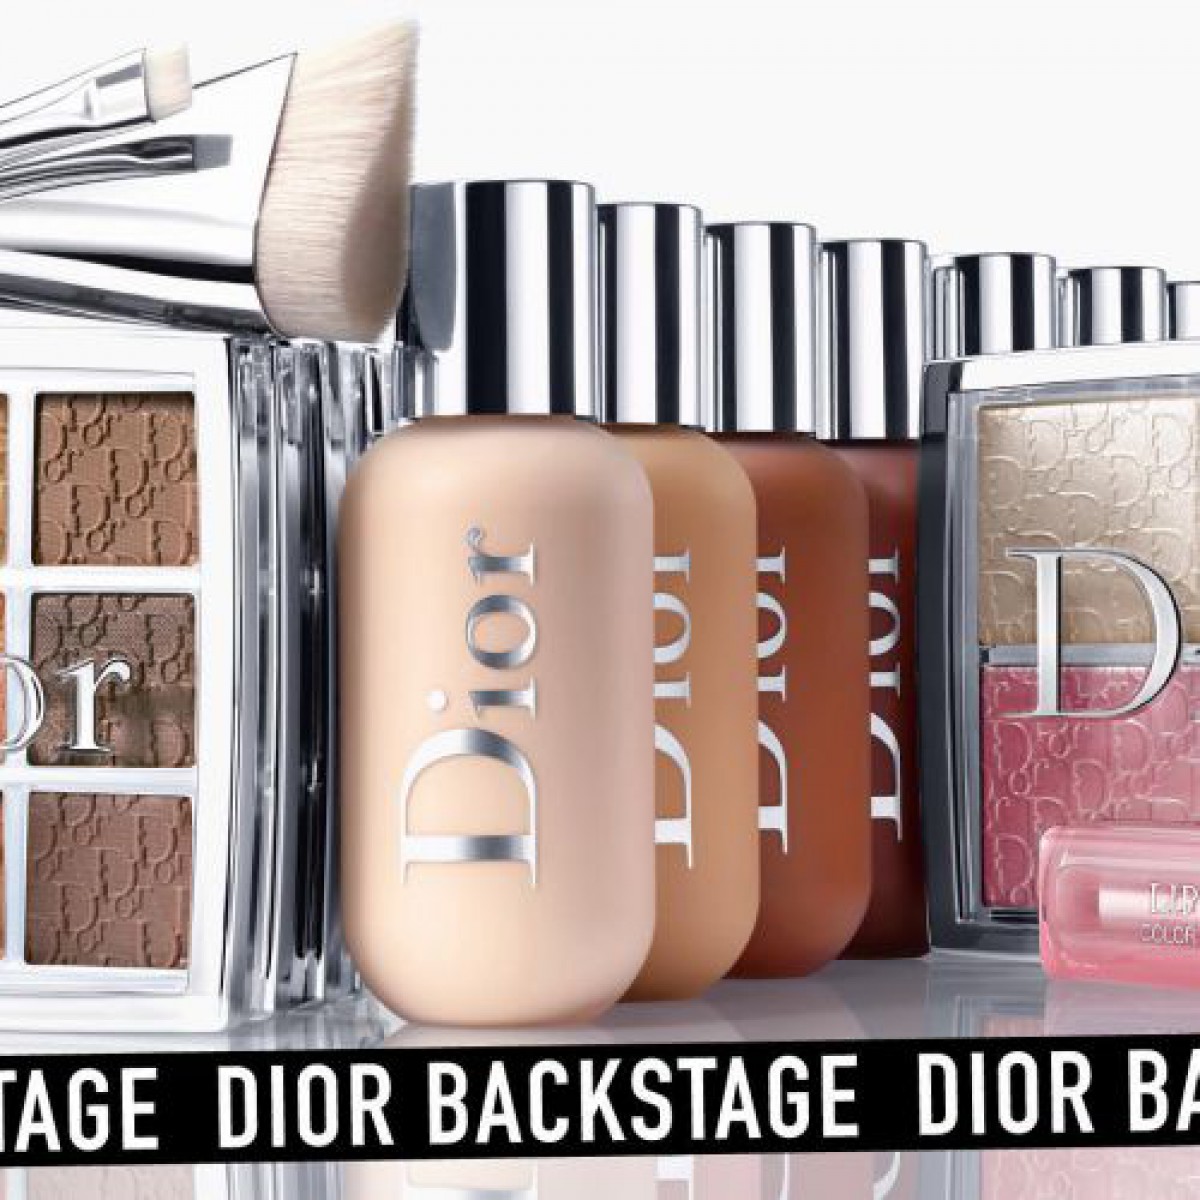 大人気コスメブランド Diorから待望の新ライン!バックステージが既に人気のウワサなワケって?